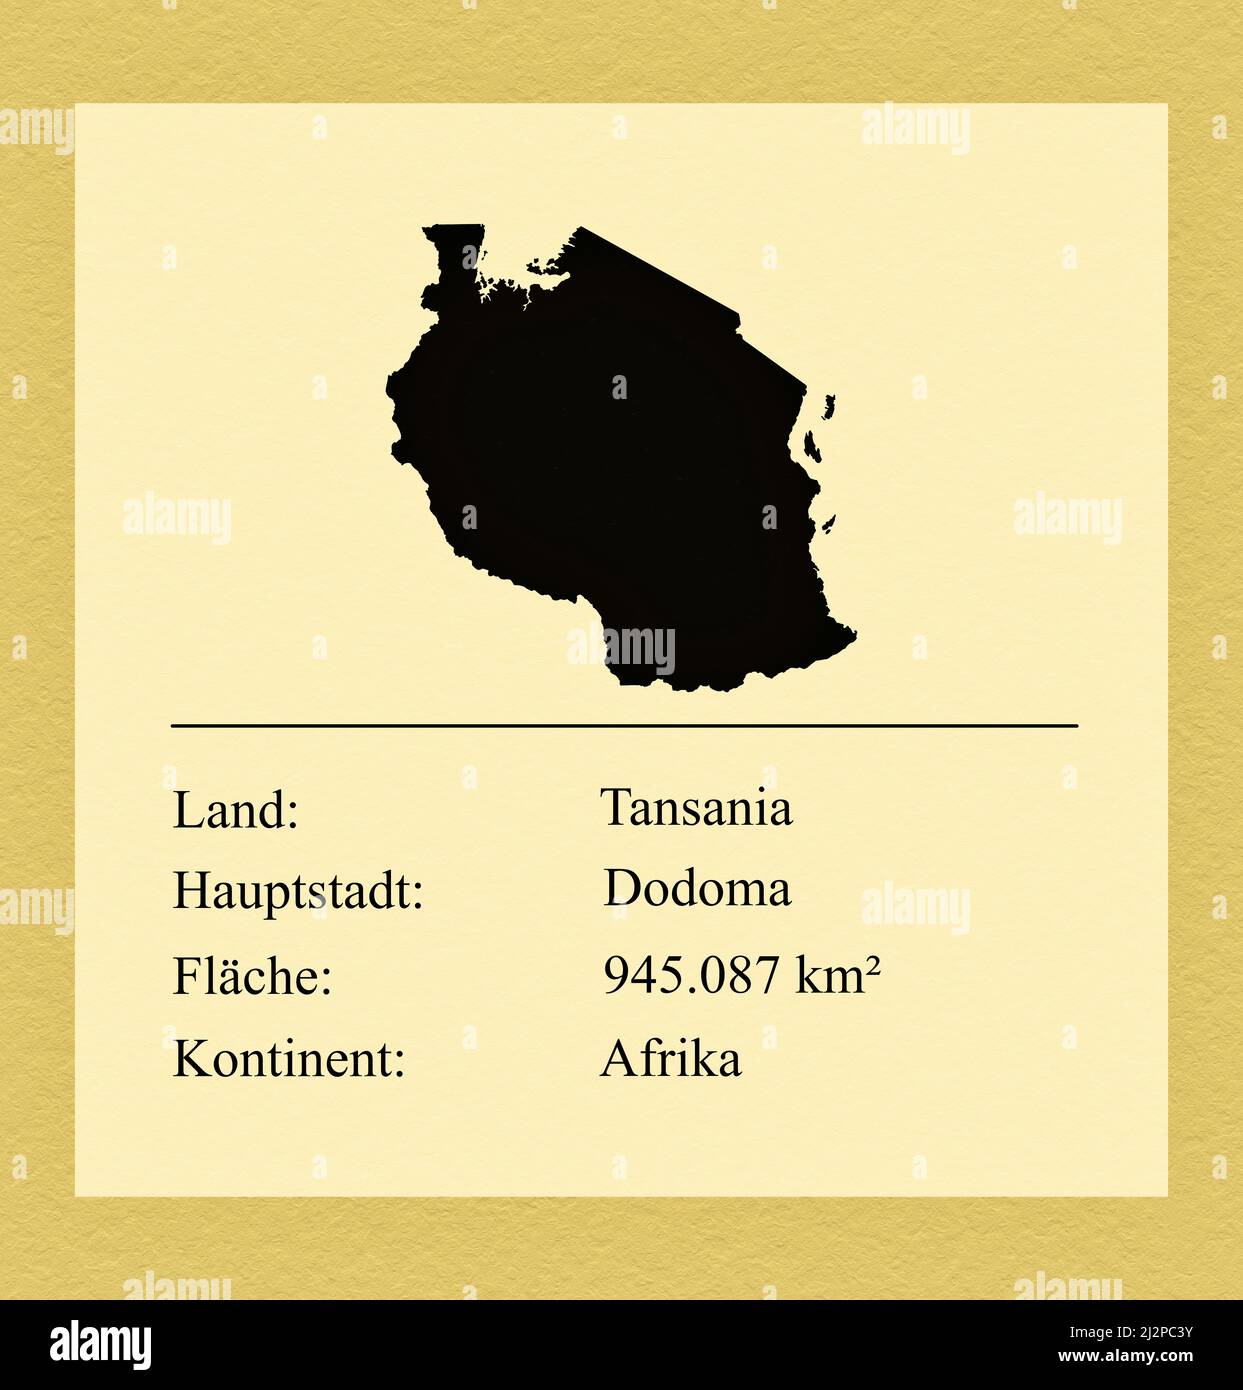 Umrisse des Landes Tansania, darunter ein kleiner Steckbrief mit Ländernamen, Hauptstadt, Fläche und Kontinent Stock Photo